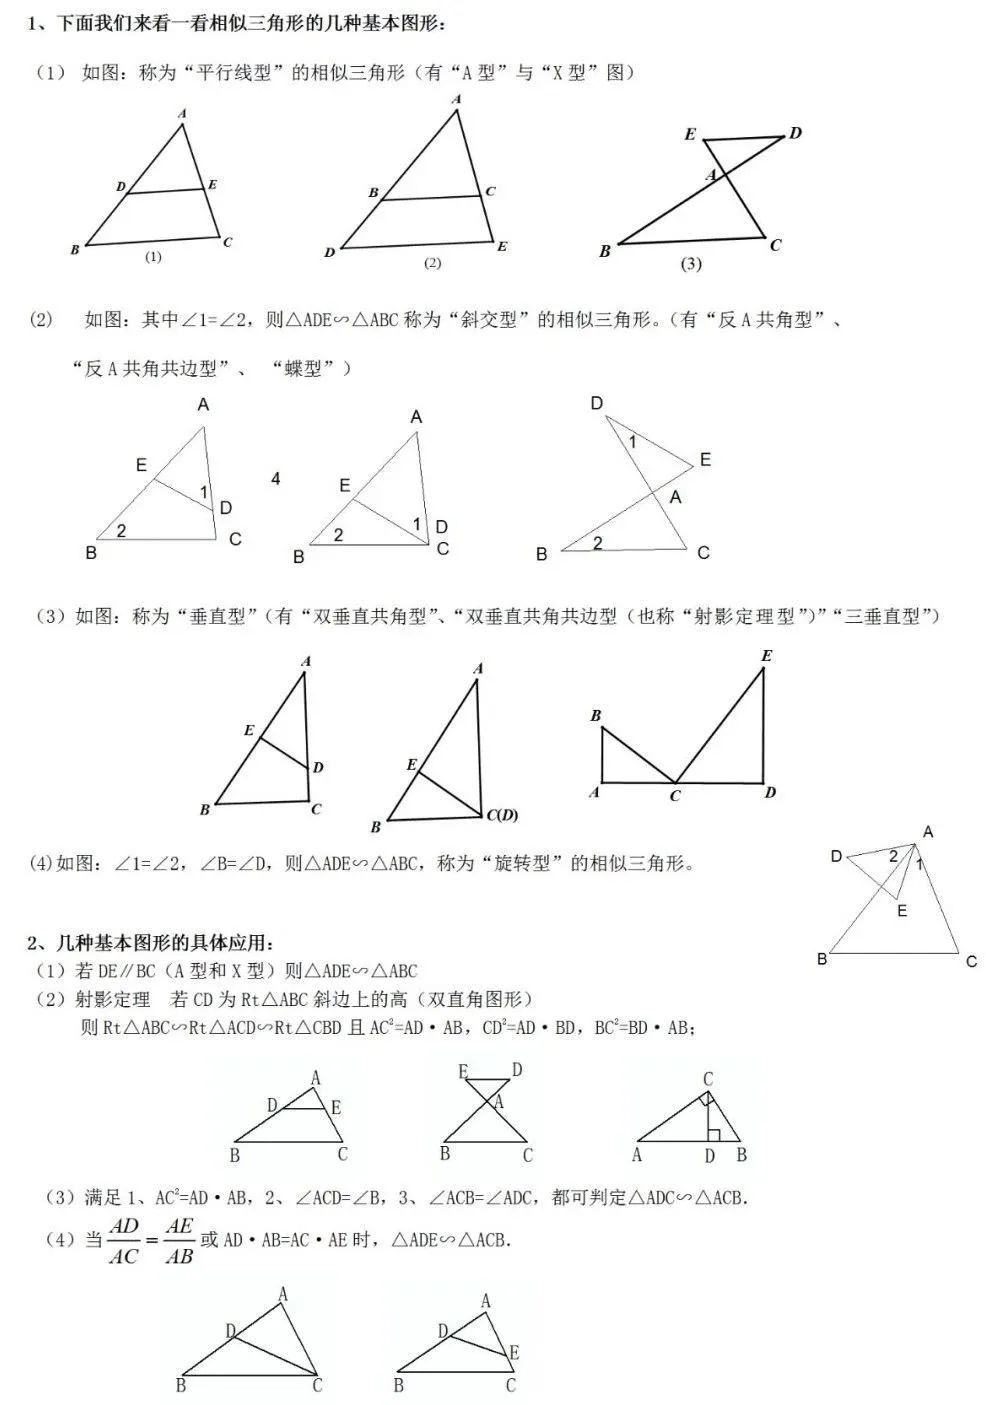 学习 初中数学 相似三角形 13大知识点6大常考经典例题透析 初中